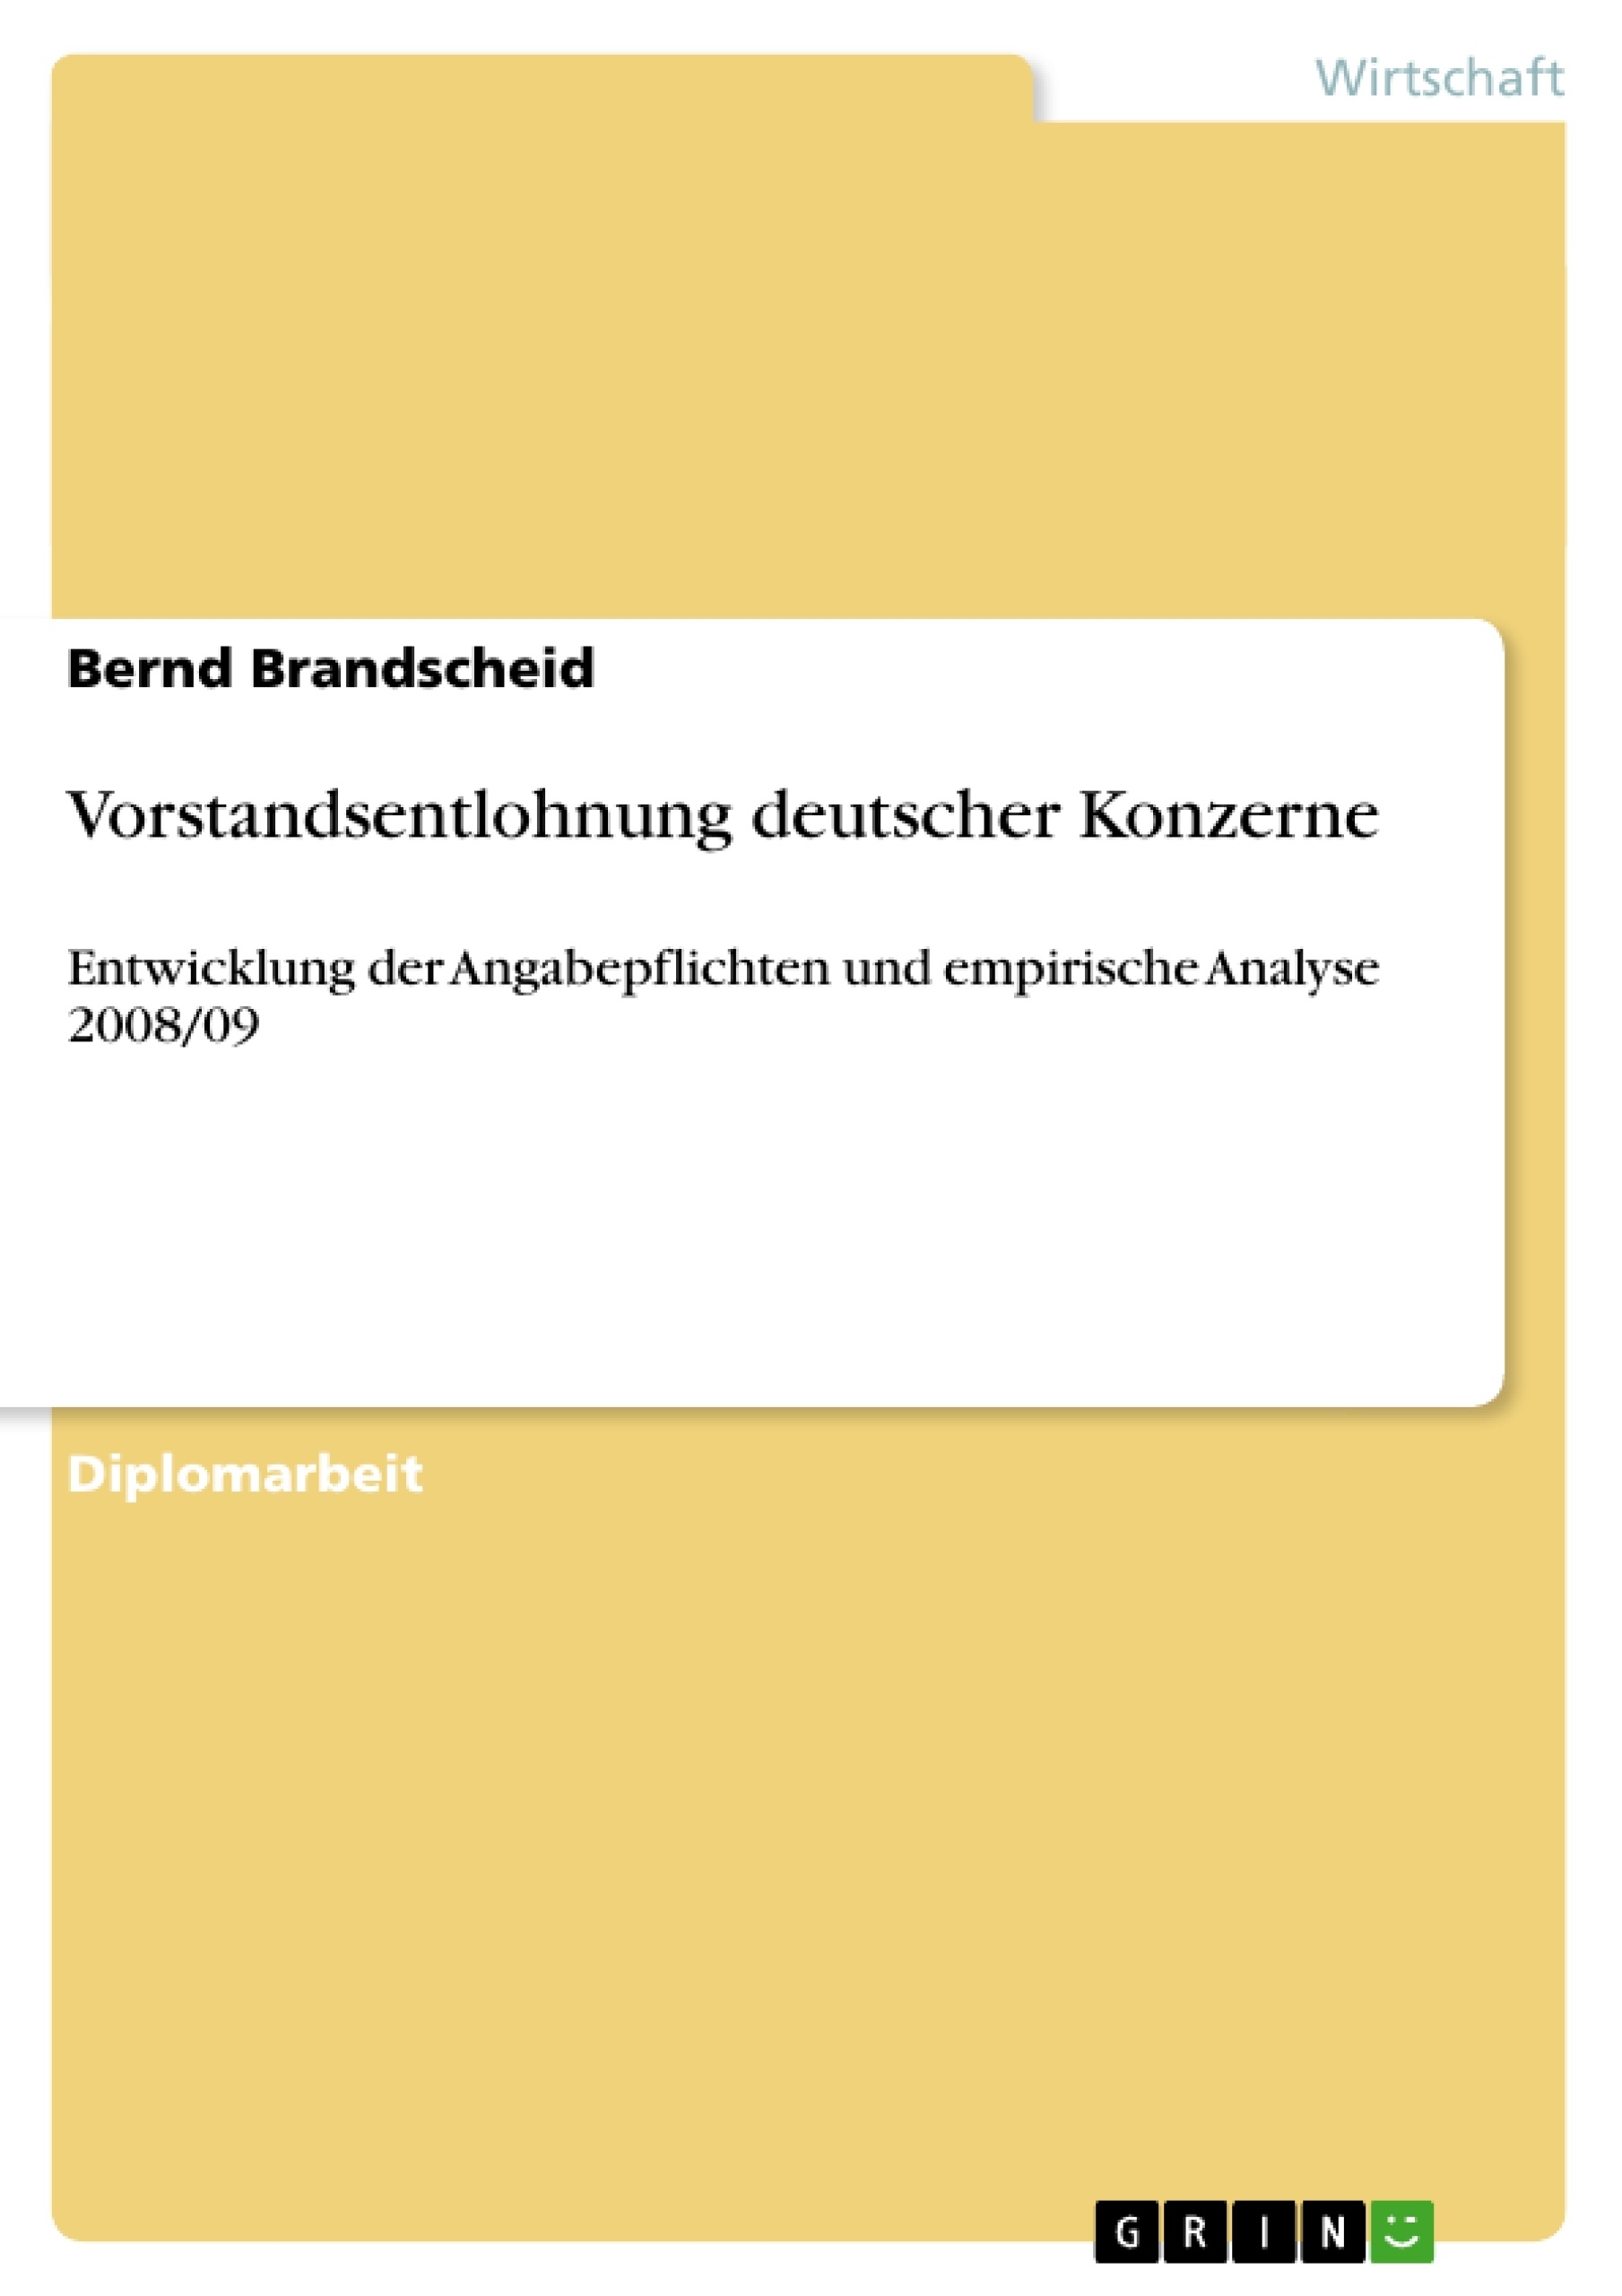 Title: Vorstandsentlohnung deutscher Konzerne